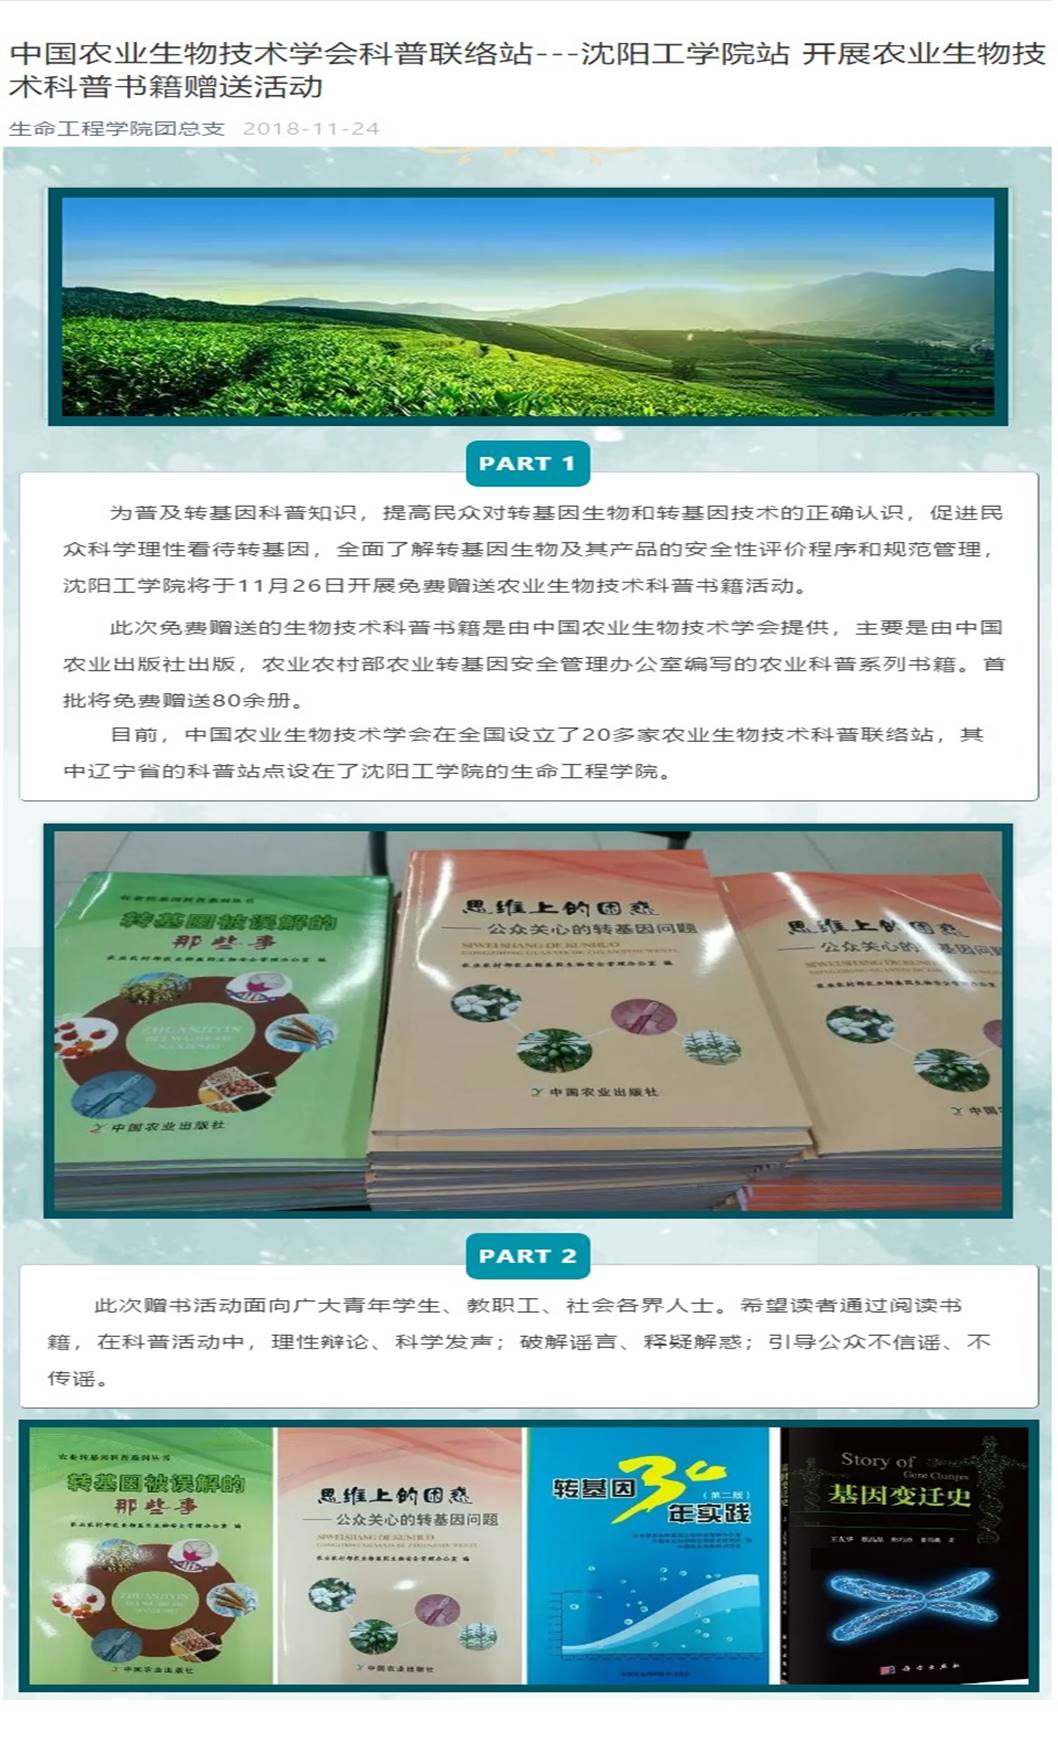 中国农业生物技术学会科普联络站